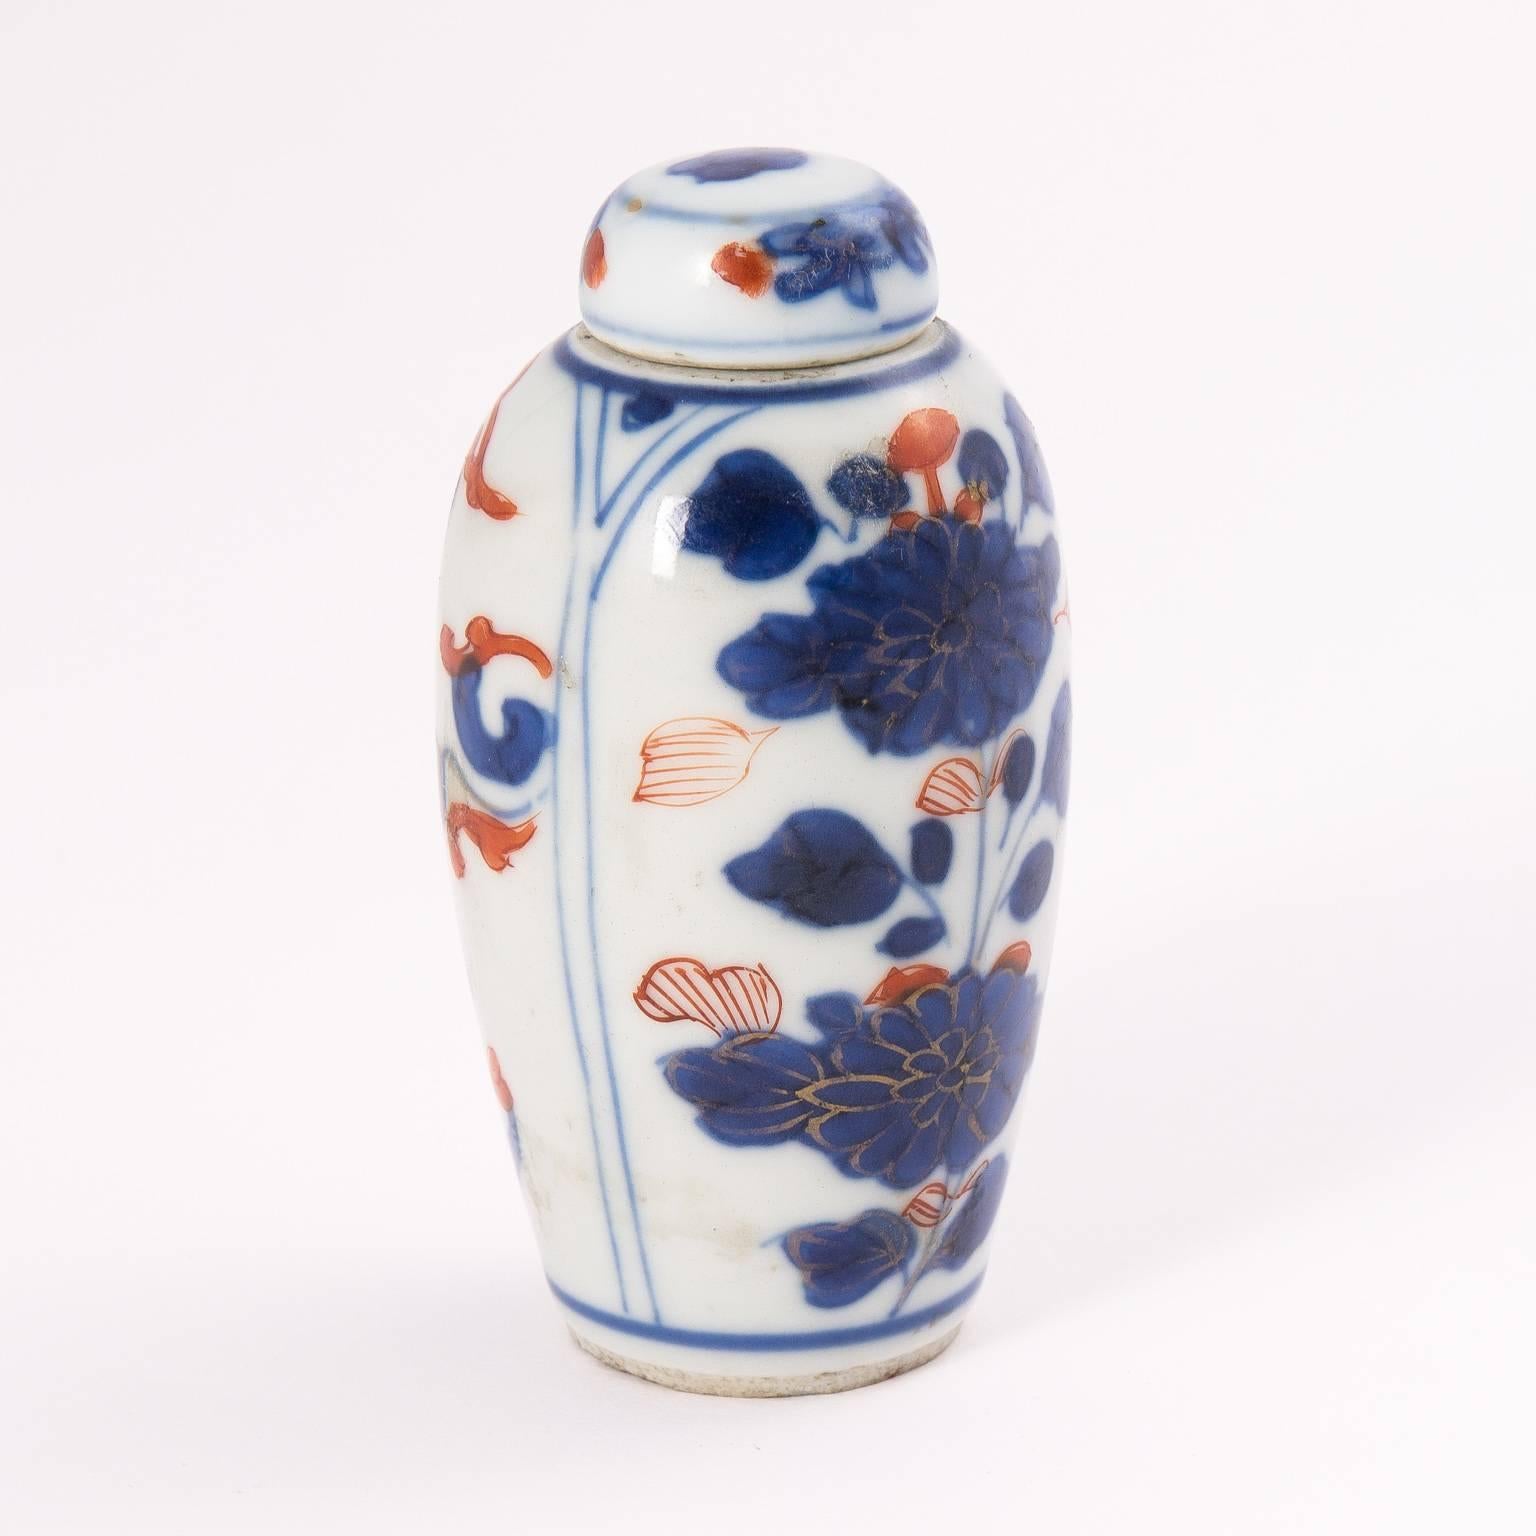 Imari minature vase with matching cover.
  